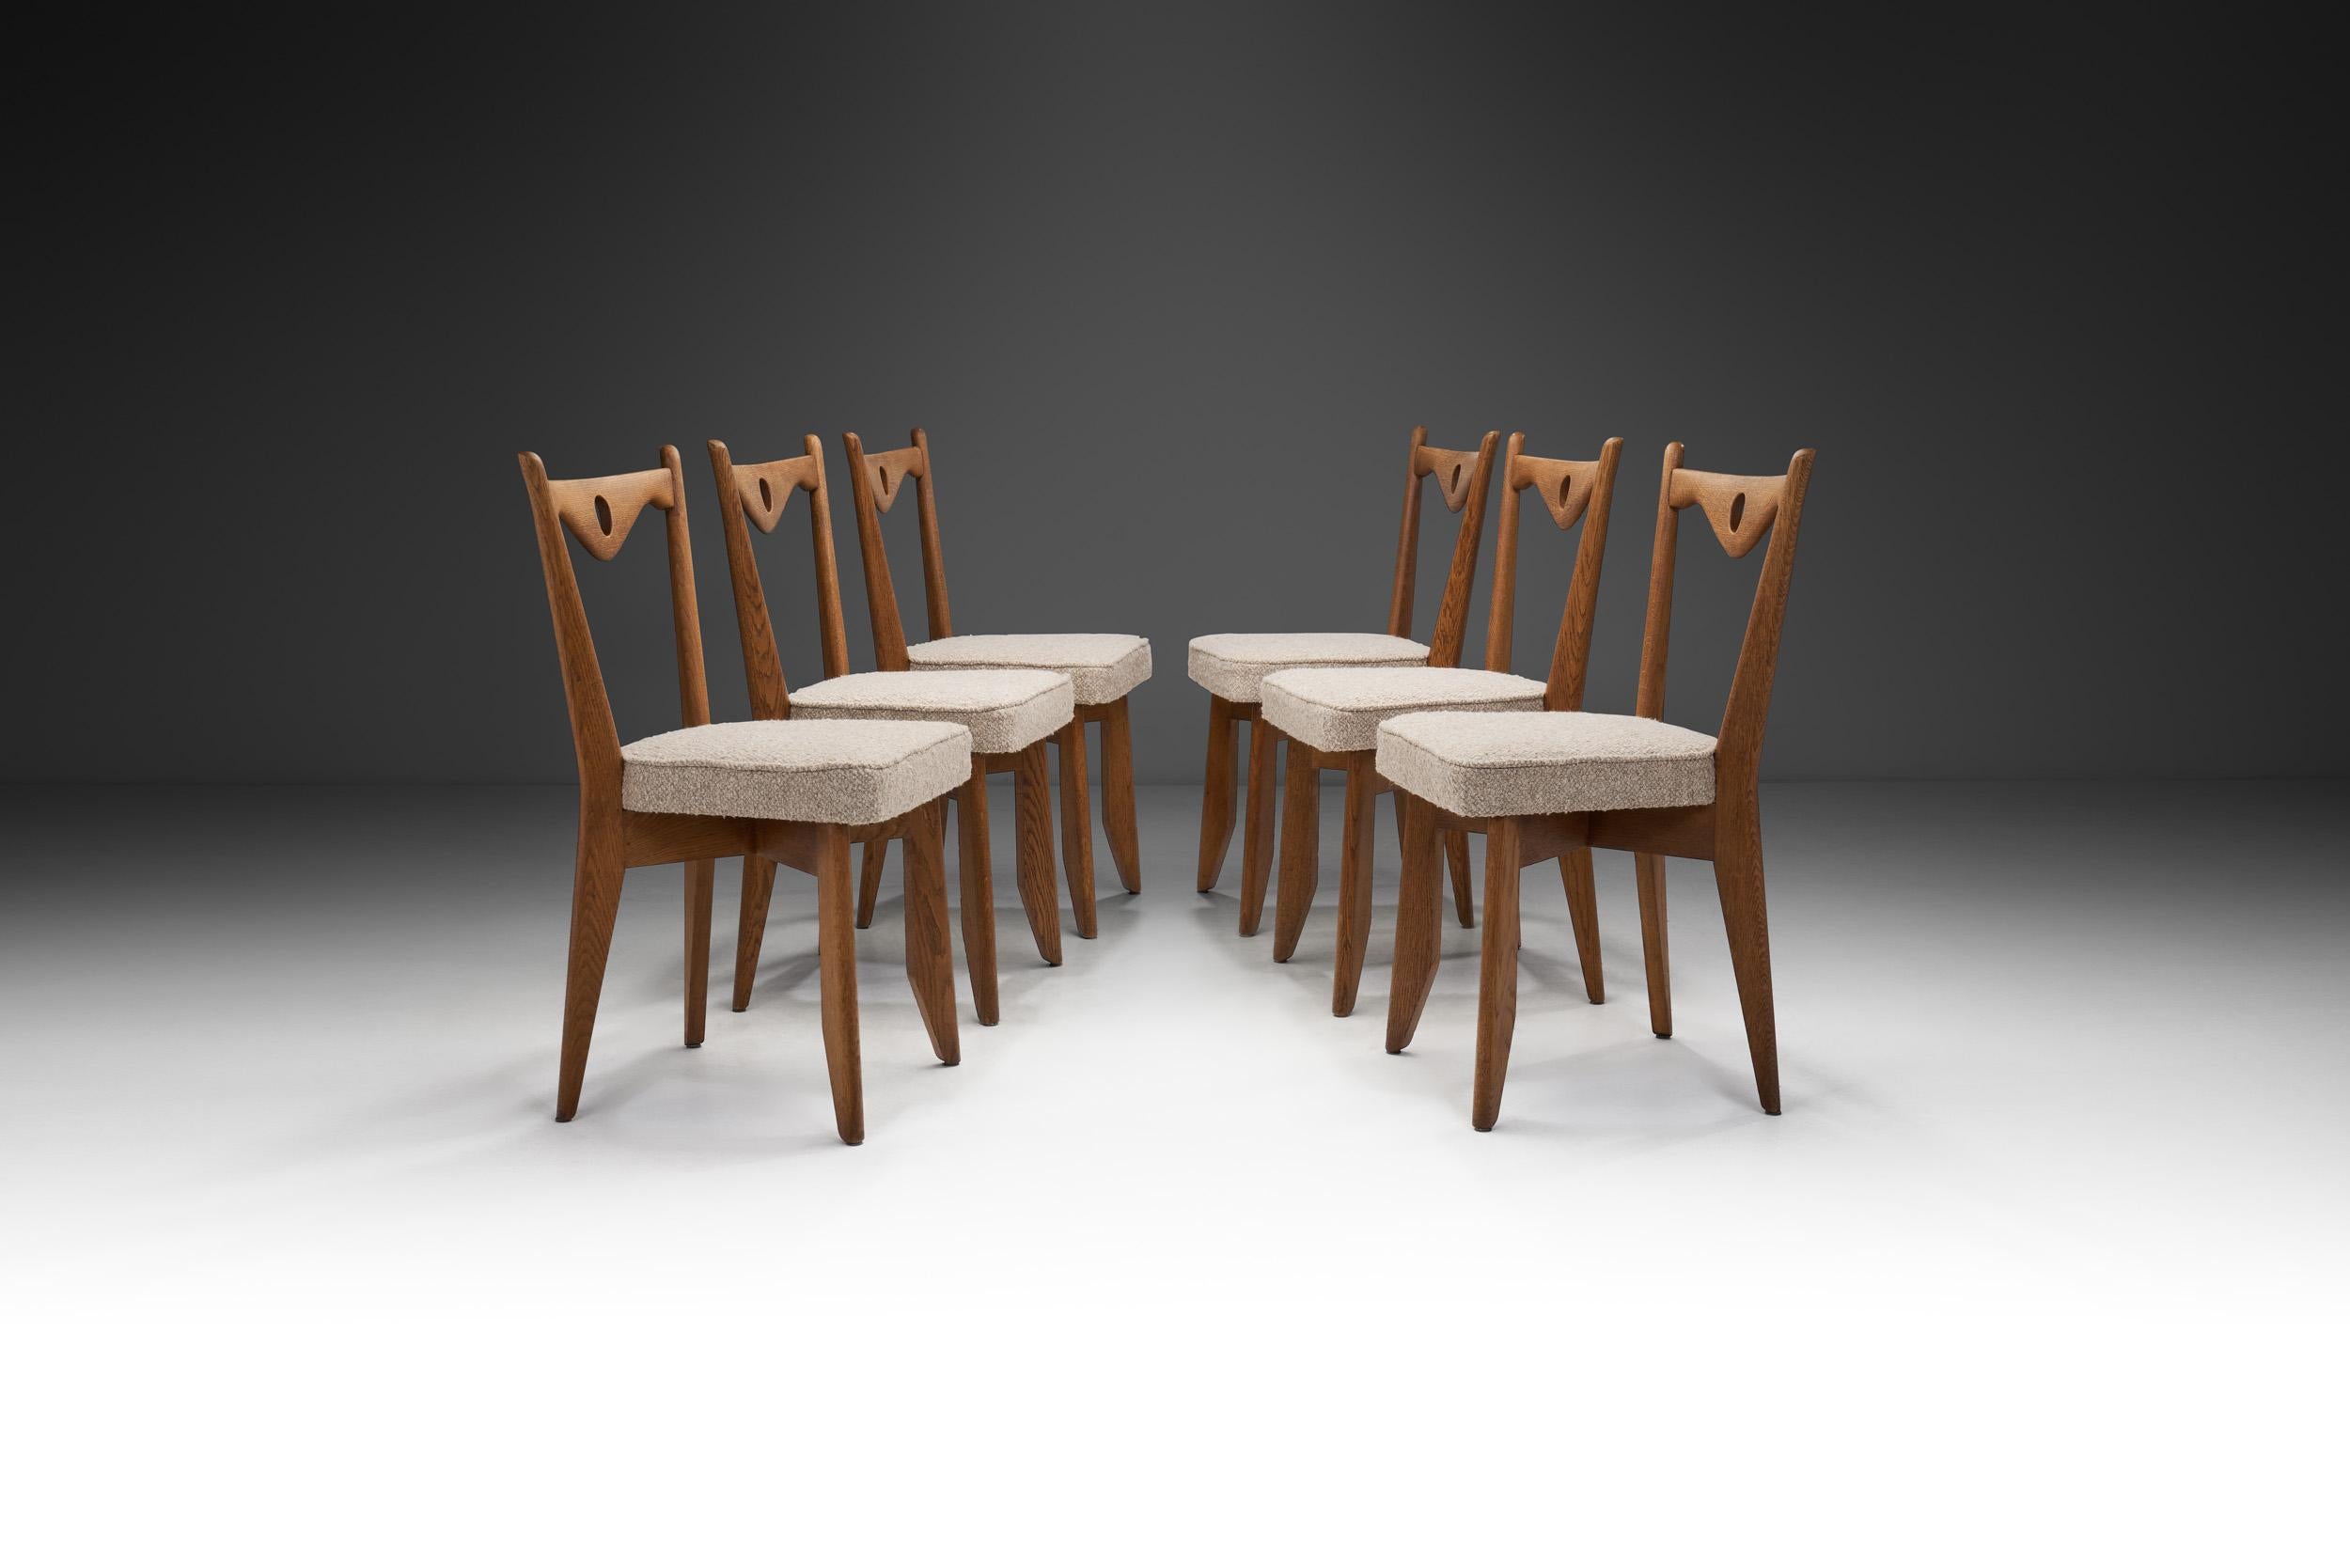 Dieses seltene Set aus sechs Stühlen der französischen Designer Guillerme et Chambron besticht durch sein elegantes Äußeres in Kombination mit markanten Designelementen, vor allem den charakteristischen, dreieckig gebogenen Stäben mit einem Loch in